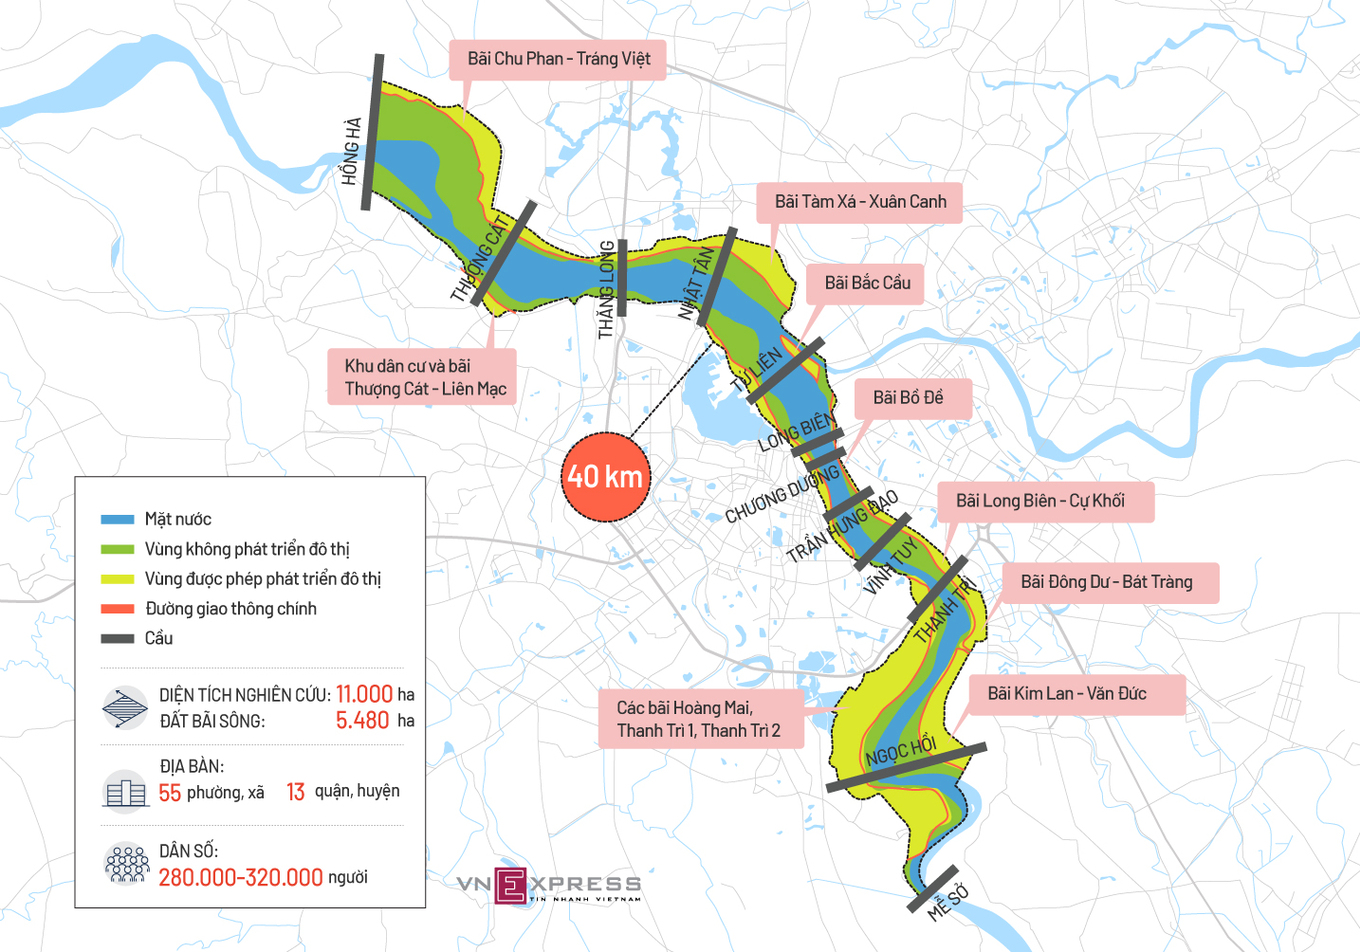 Bản đồ vị trí các bãi sông Hồng trong khu vực quy hoạch